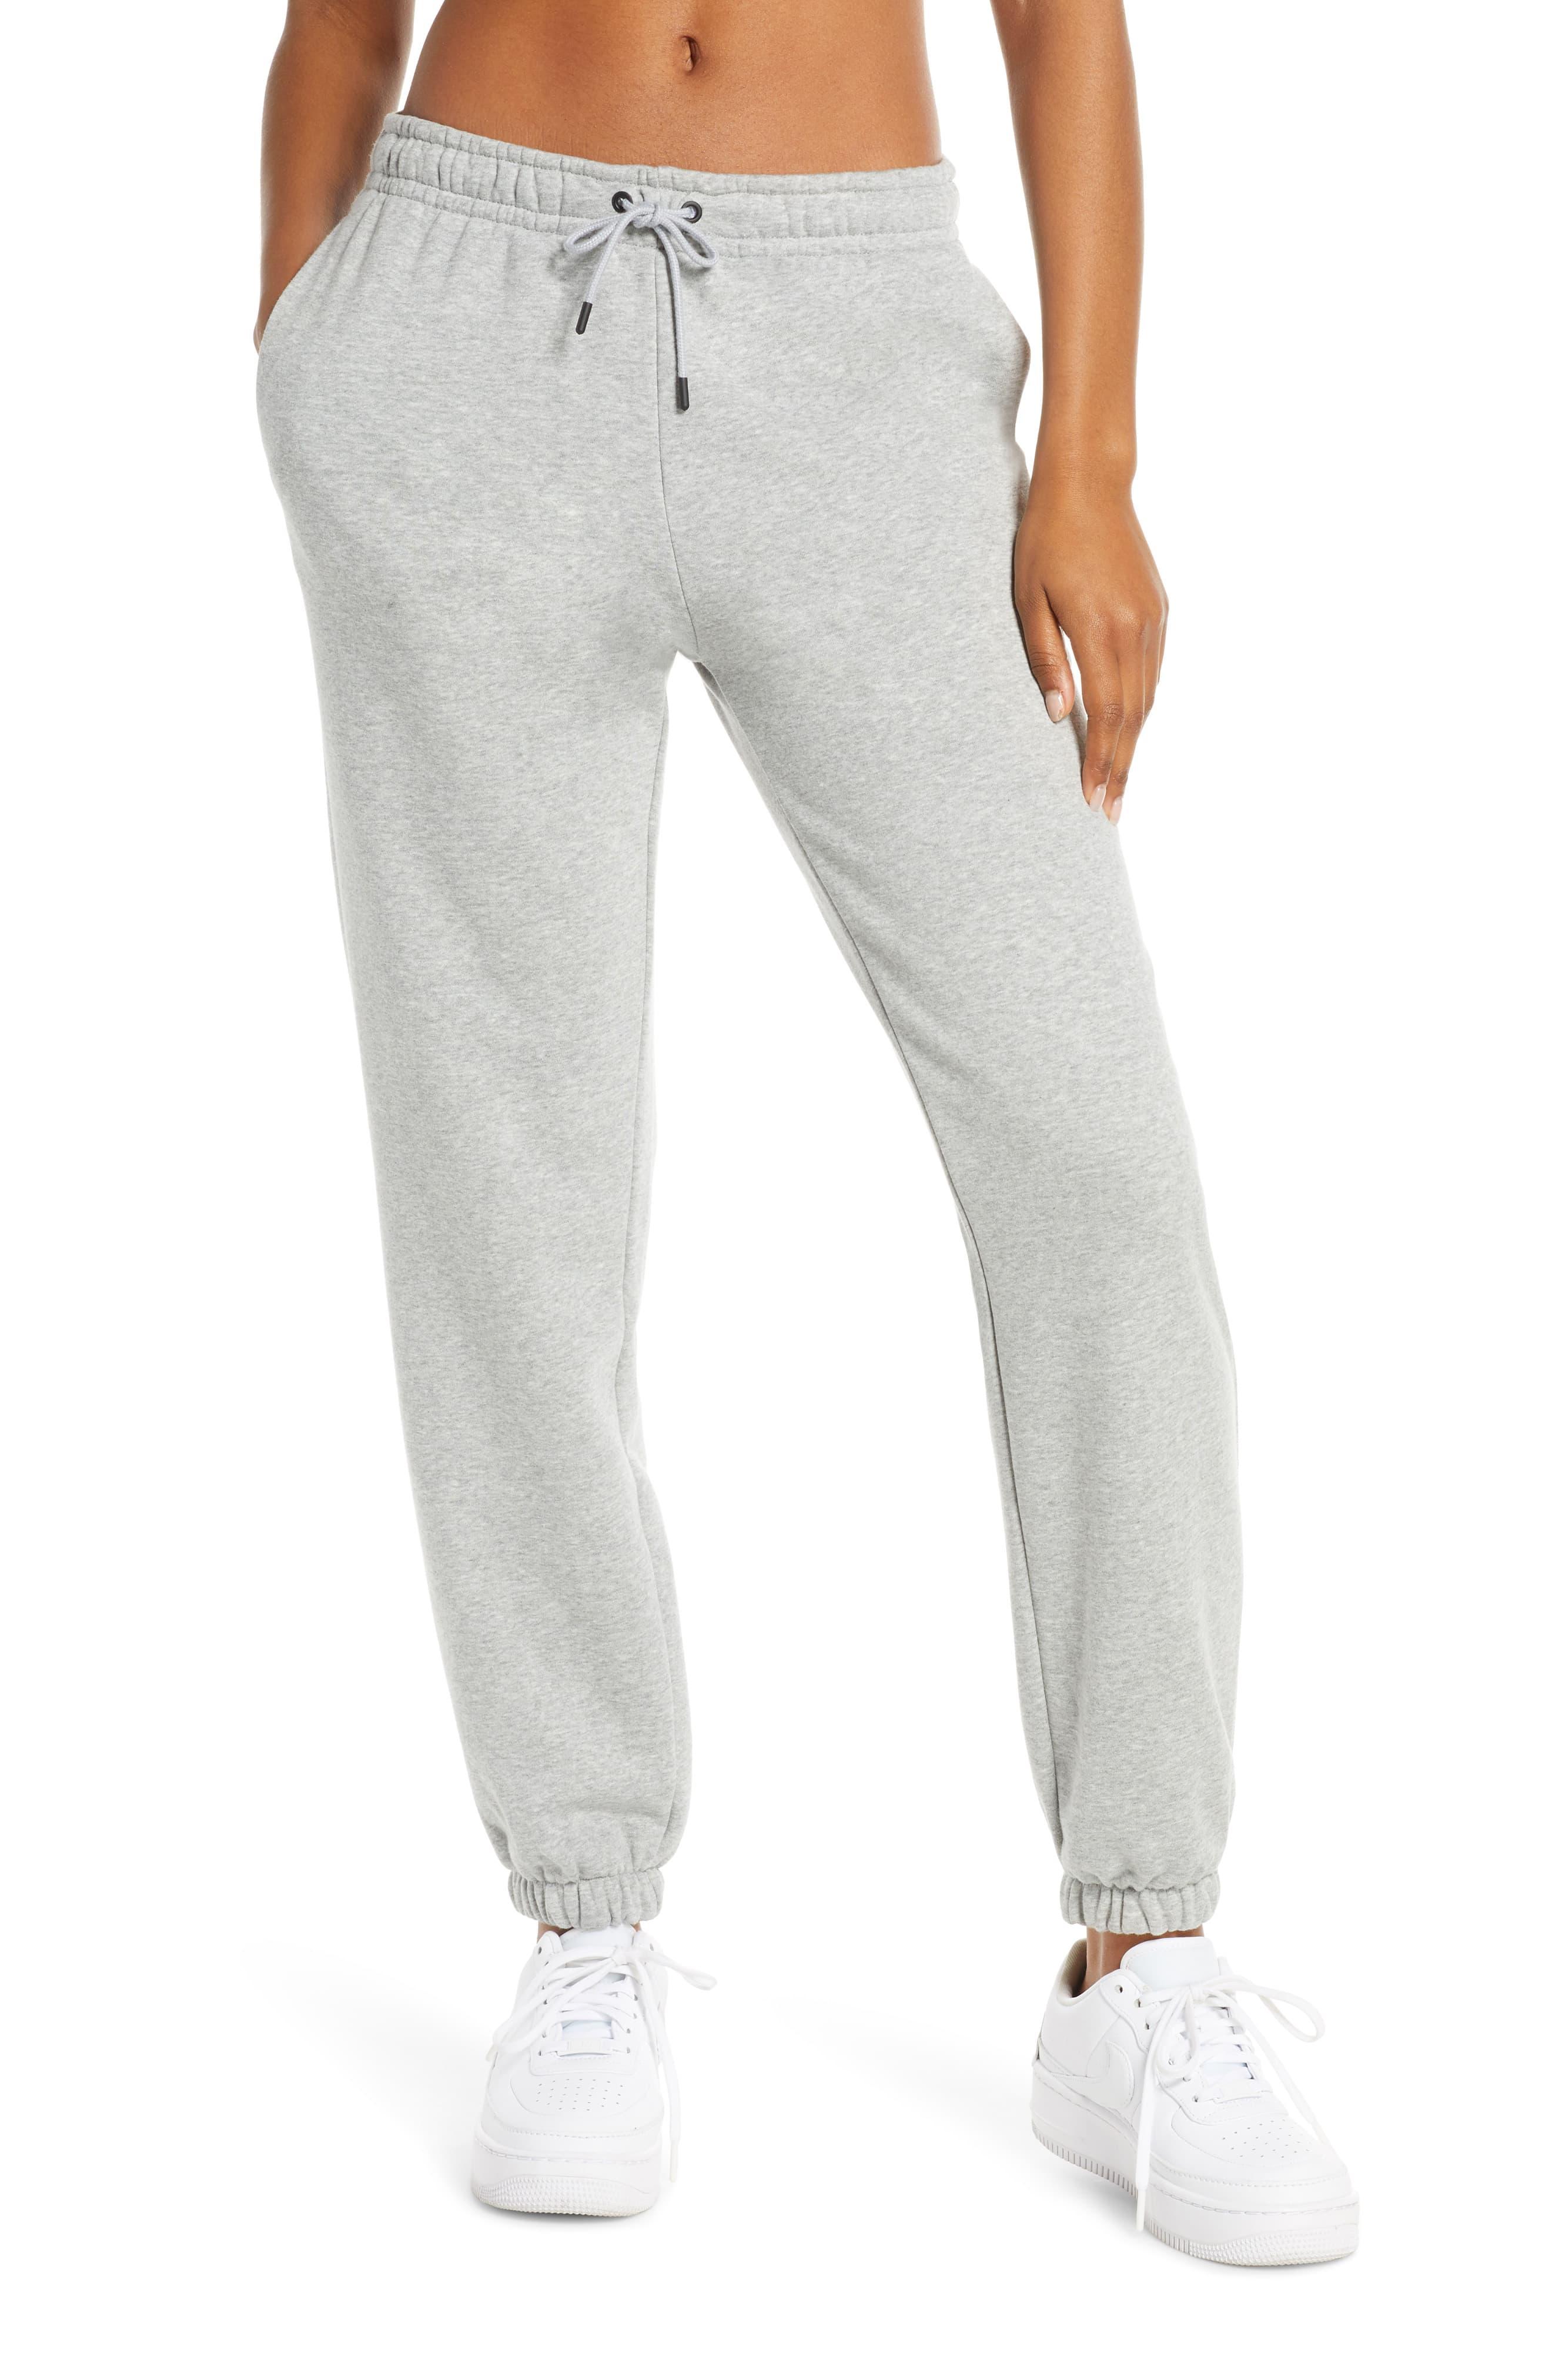 women's fleece trousers nike sportswear essential